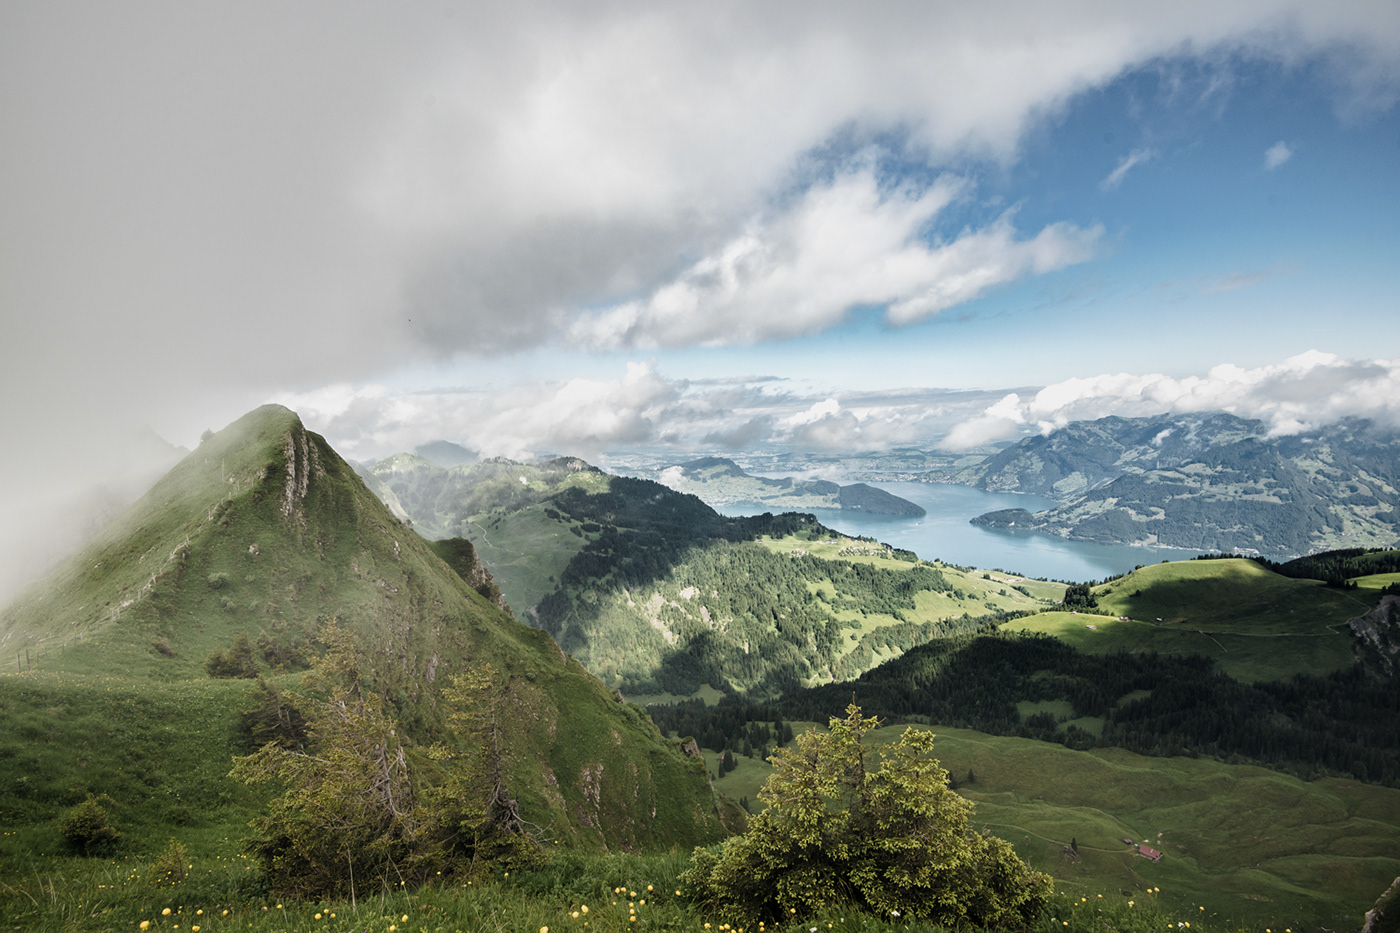 Nidwalden Switzerland moody landscape mountains Schweiz alps weather